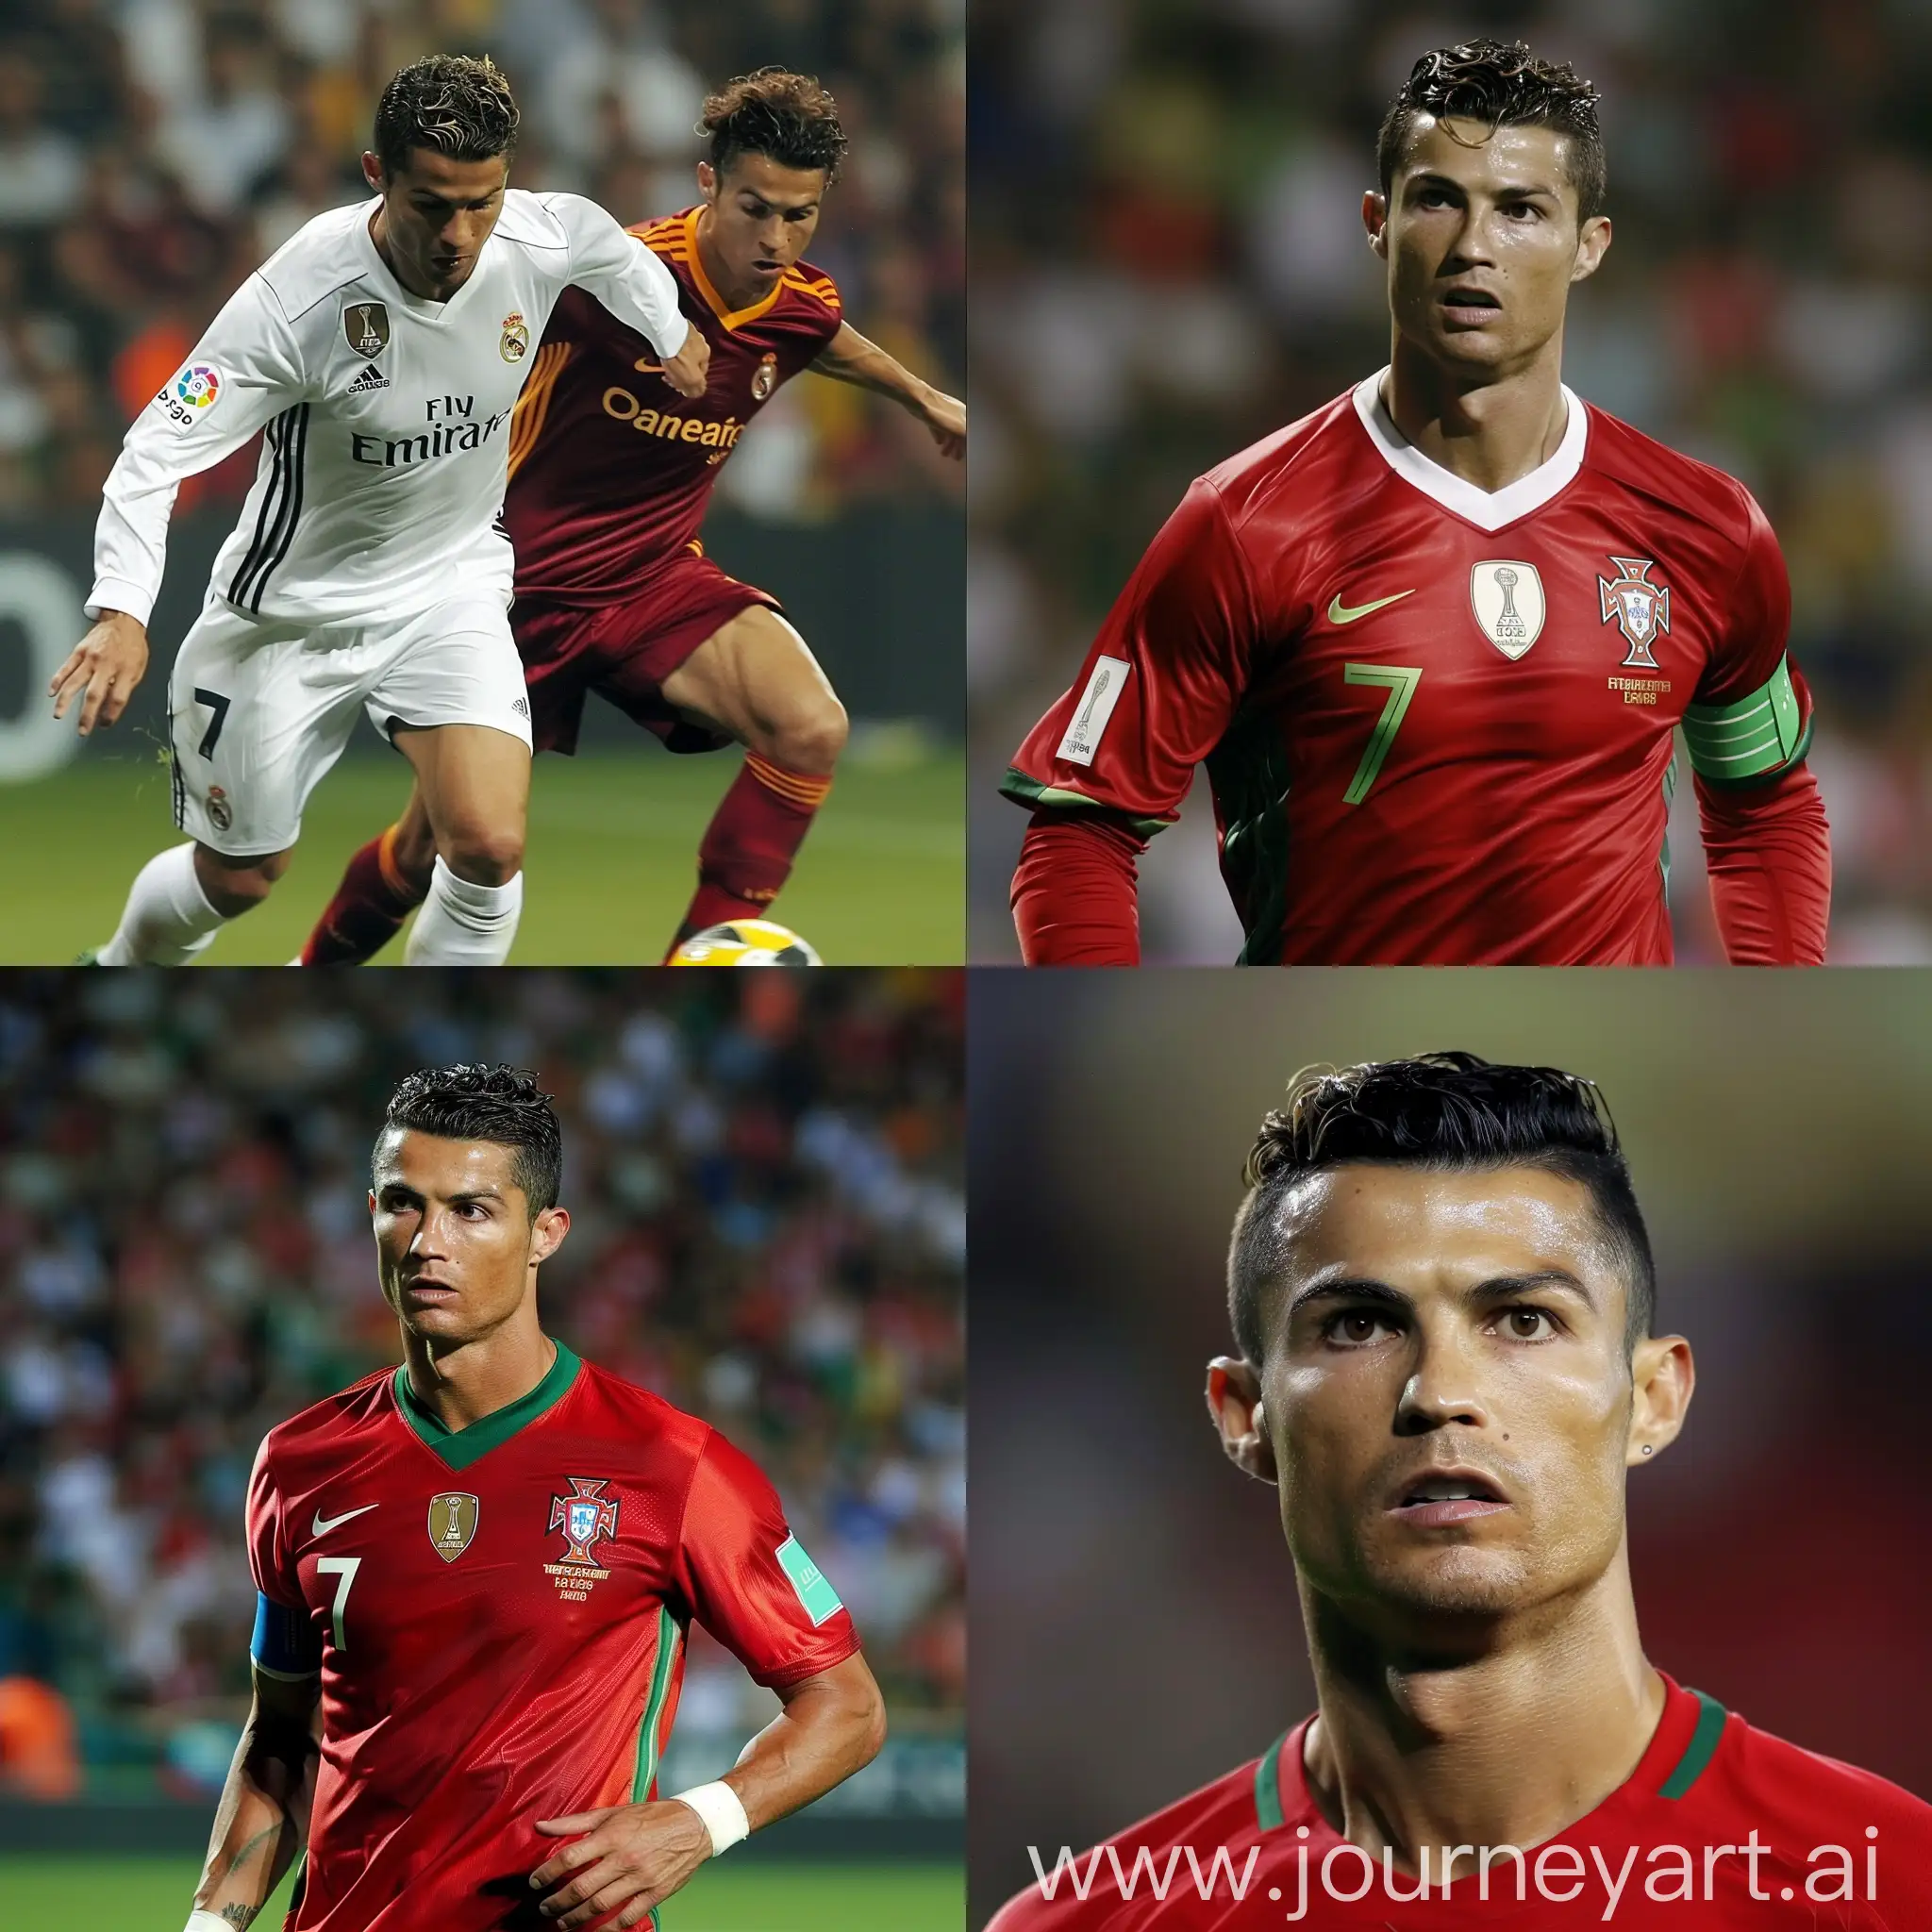 Cristiano-Ronaldo-Sporting-a-Lions-Mane